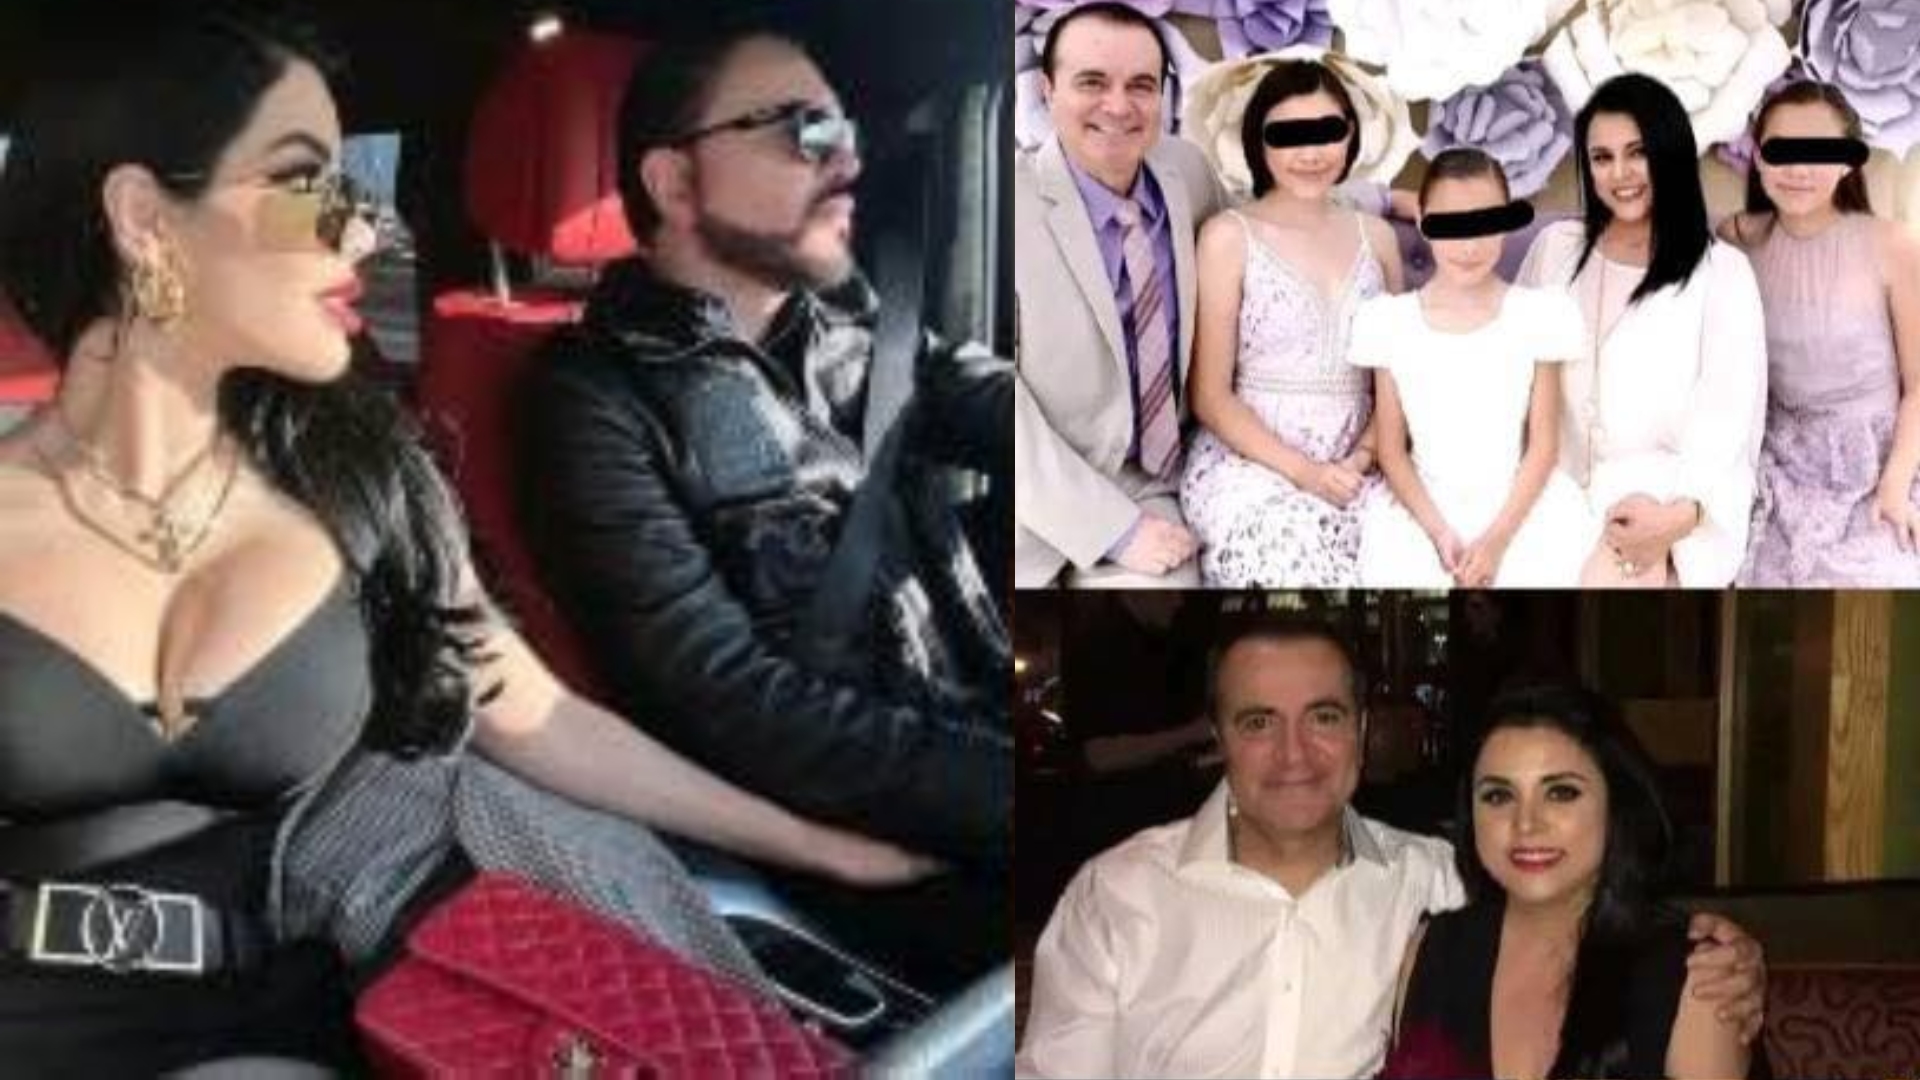 Qué se sabe de Sol León, sus fajas, y la muerte de Alma López, ex pareja de  Roberto?, Noticias de México